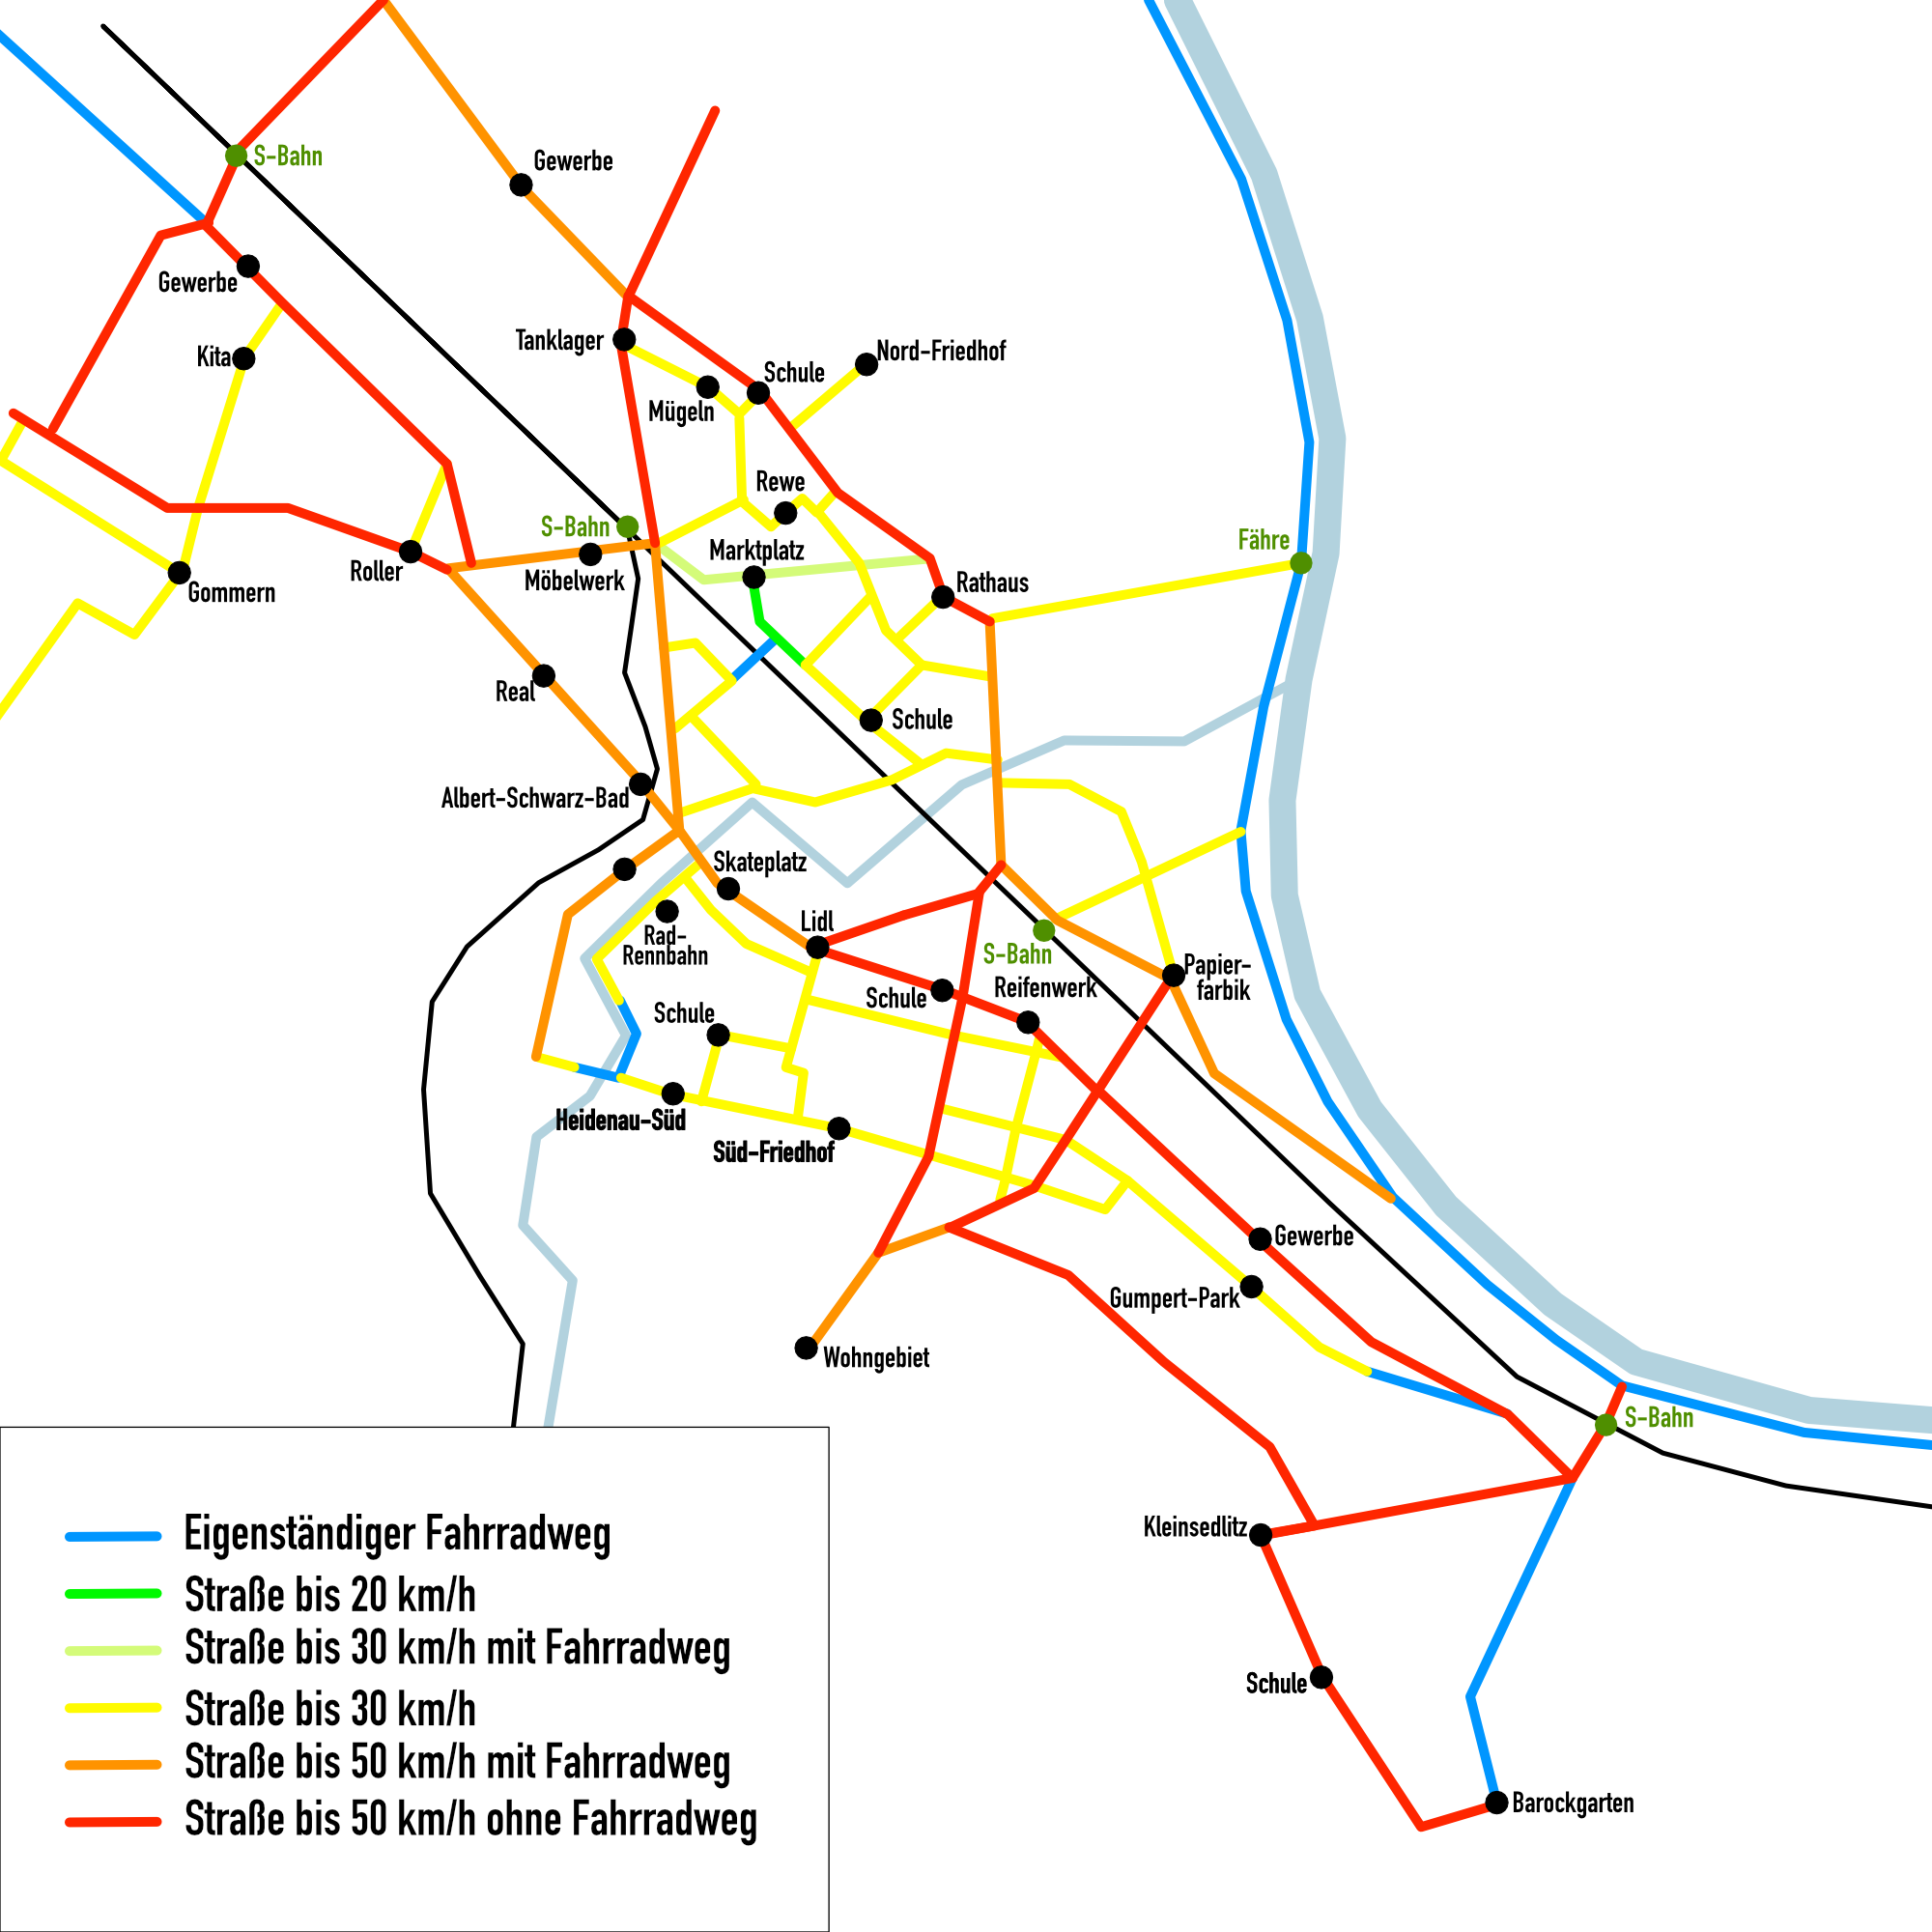 Das Endergebnis meines Projektes - ein Radnetzplan von Heidenau (leider ohne Routenvorschläge in Form von Linien)